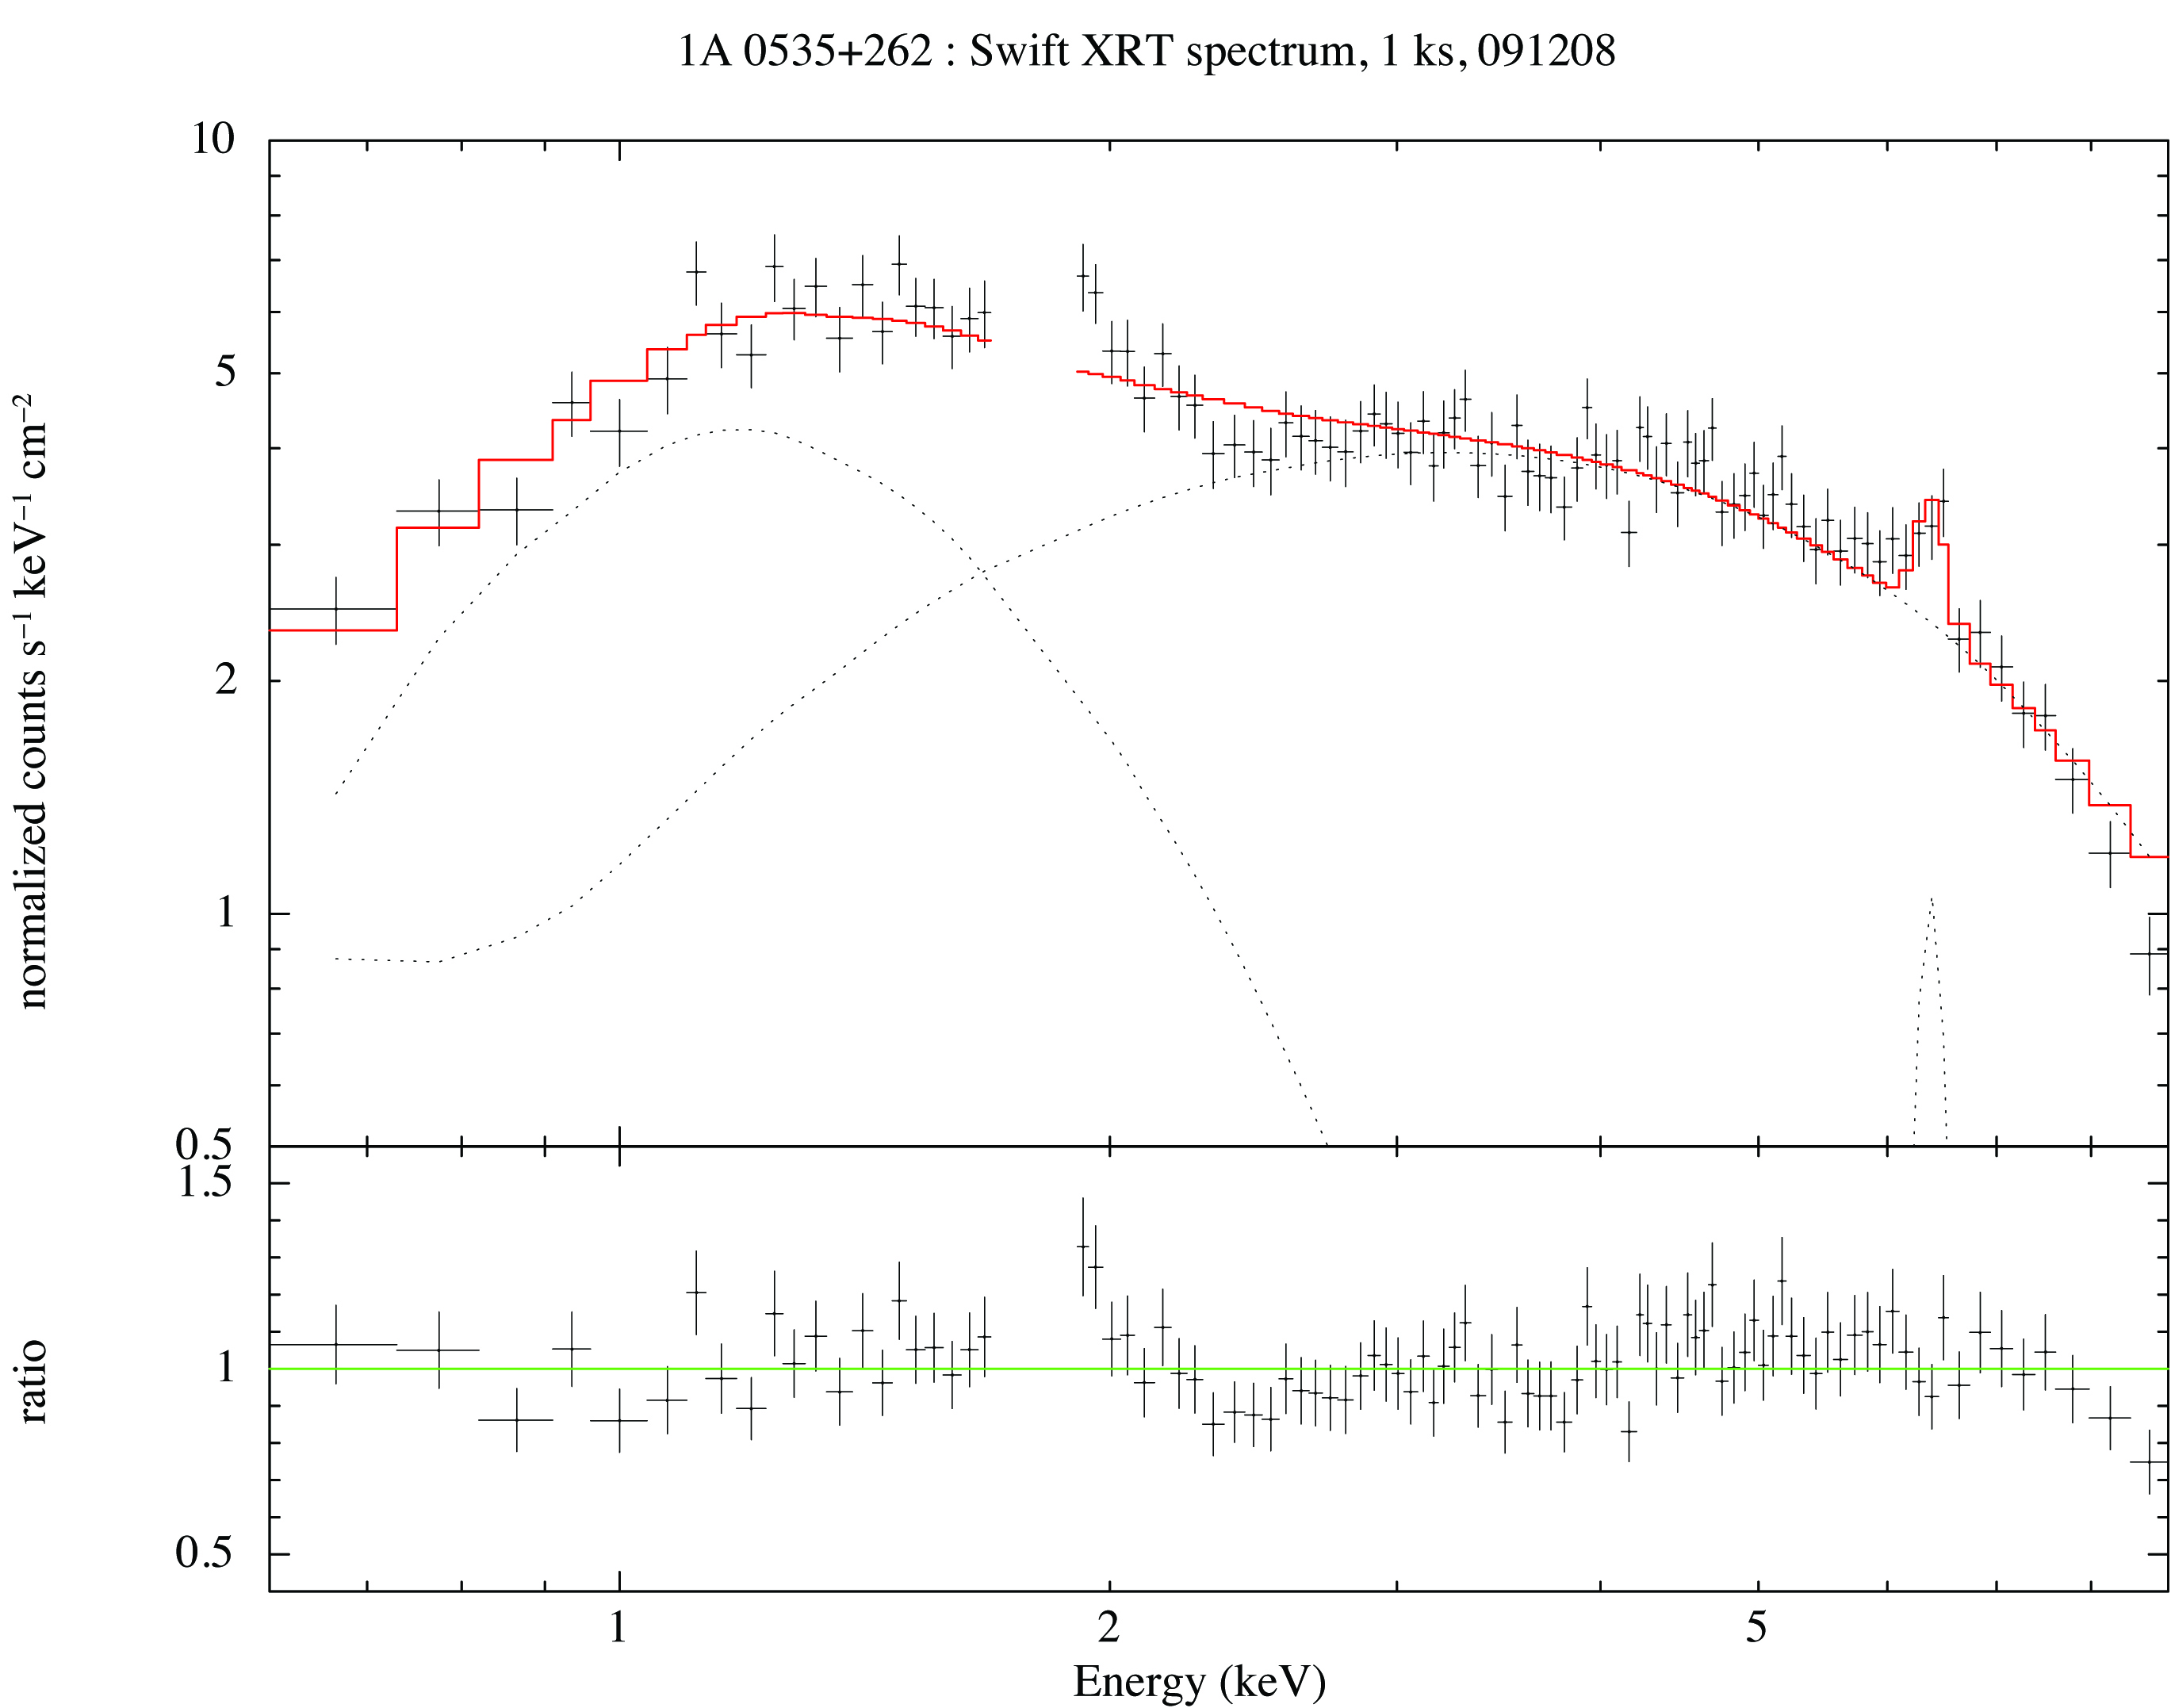 1A 0535+262 Swift XRT spectrum